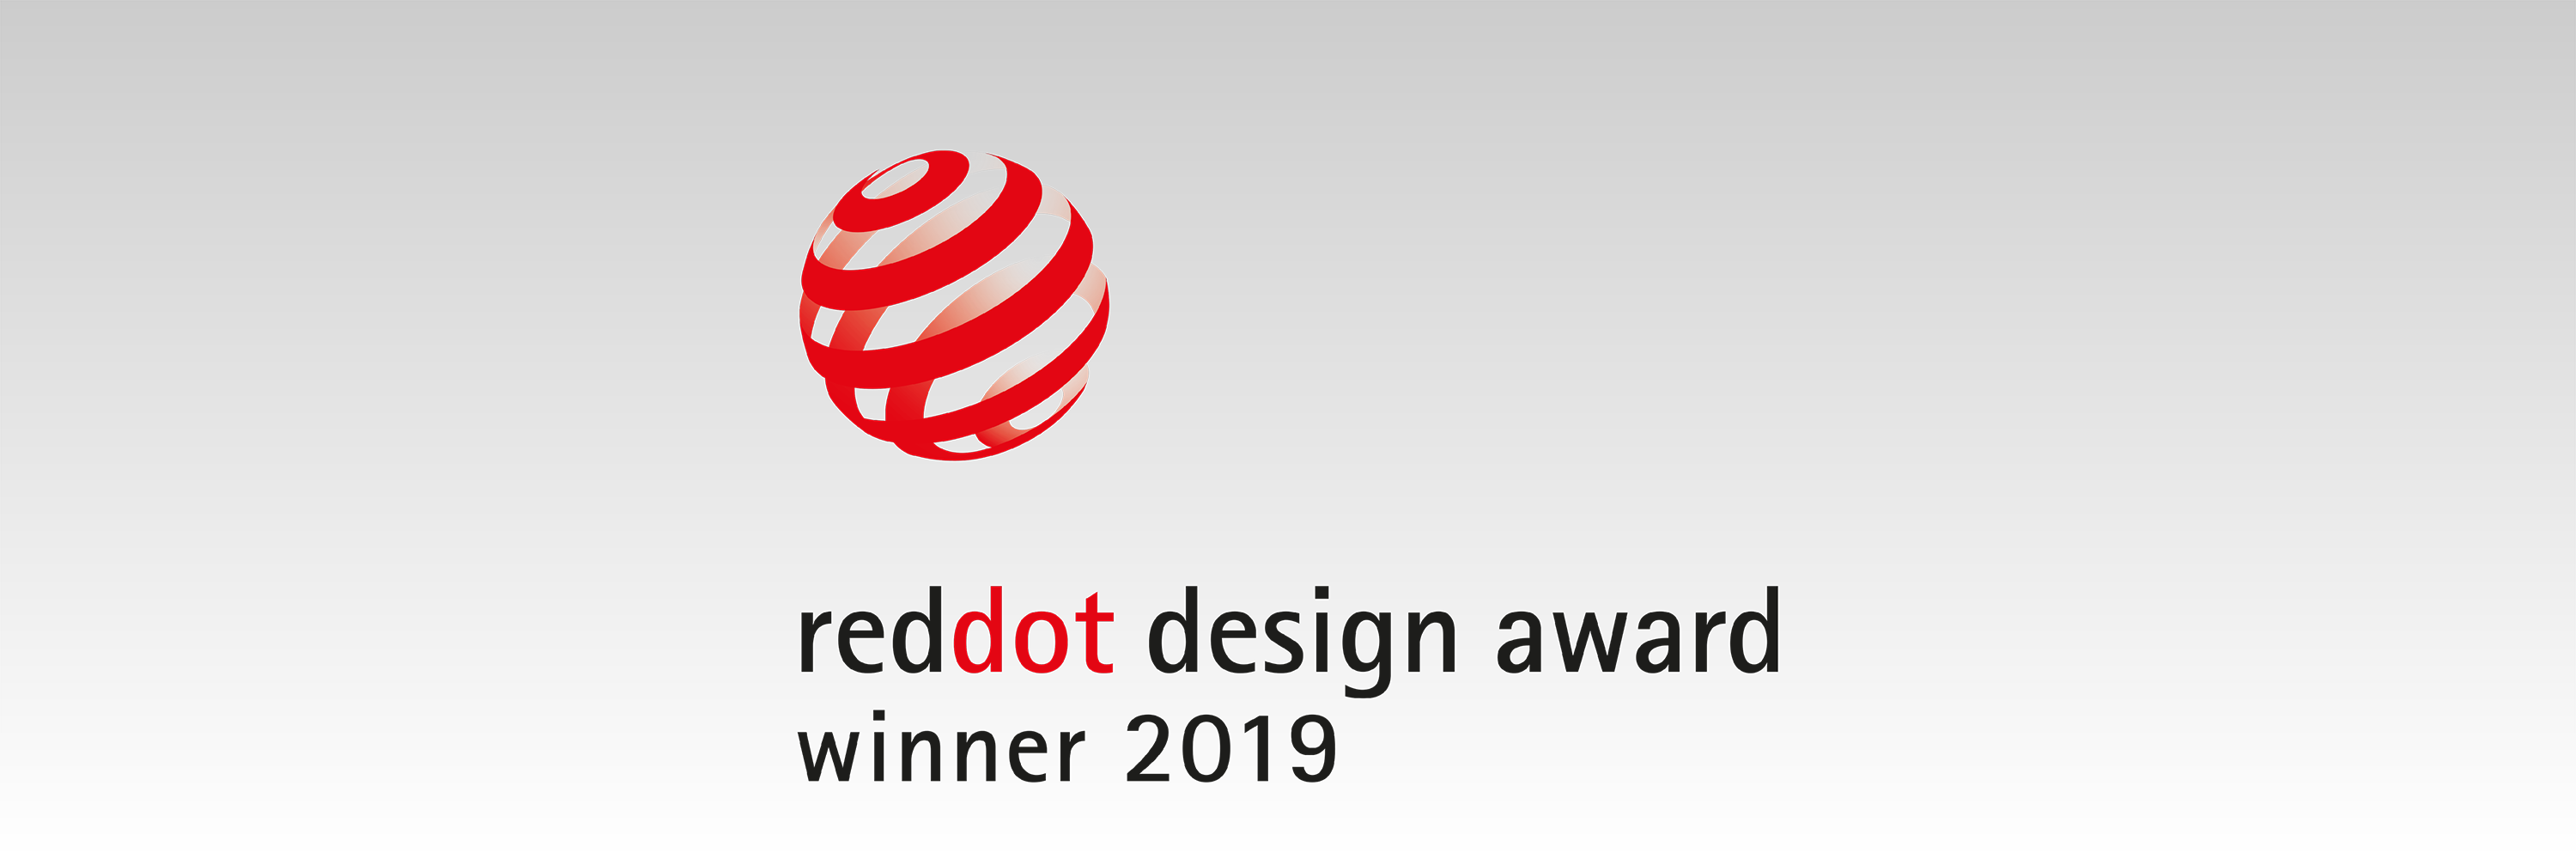 Студия Иппиарт получила Red Dot Design Award 2019!